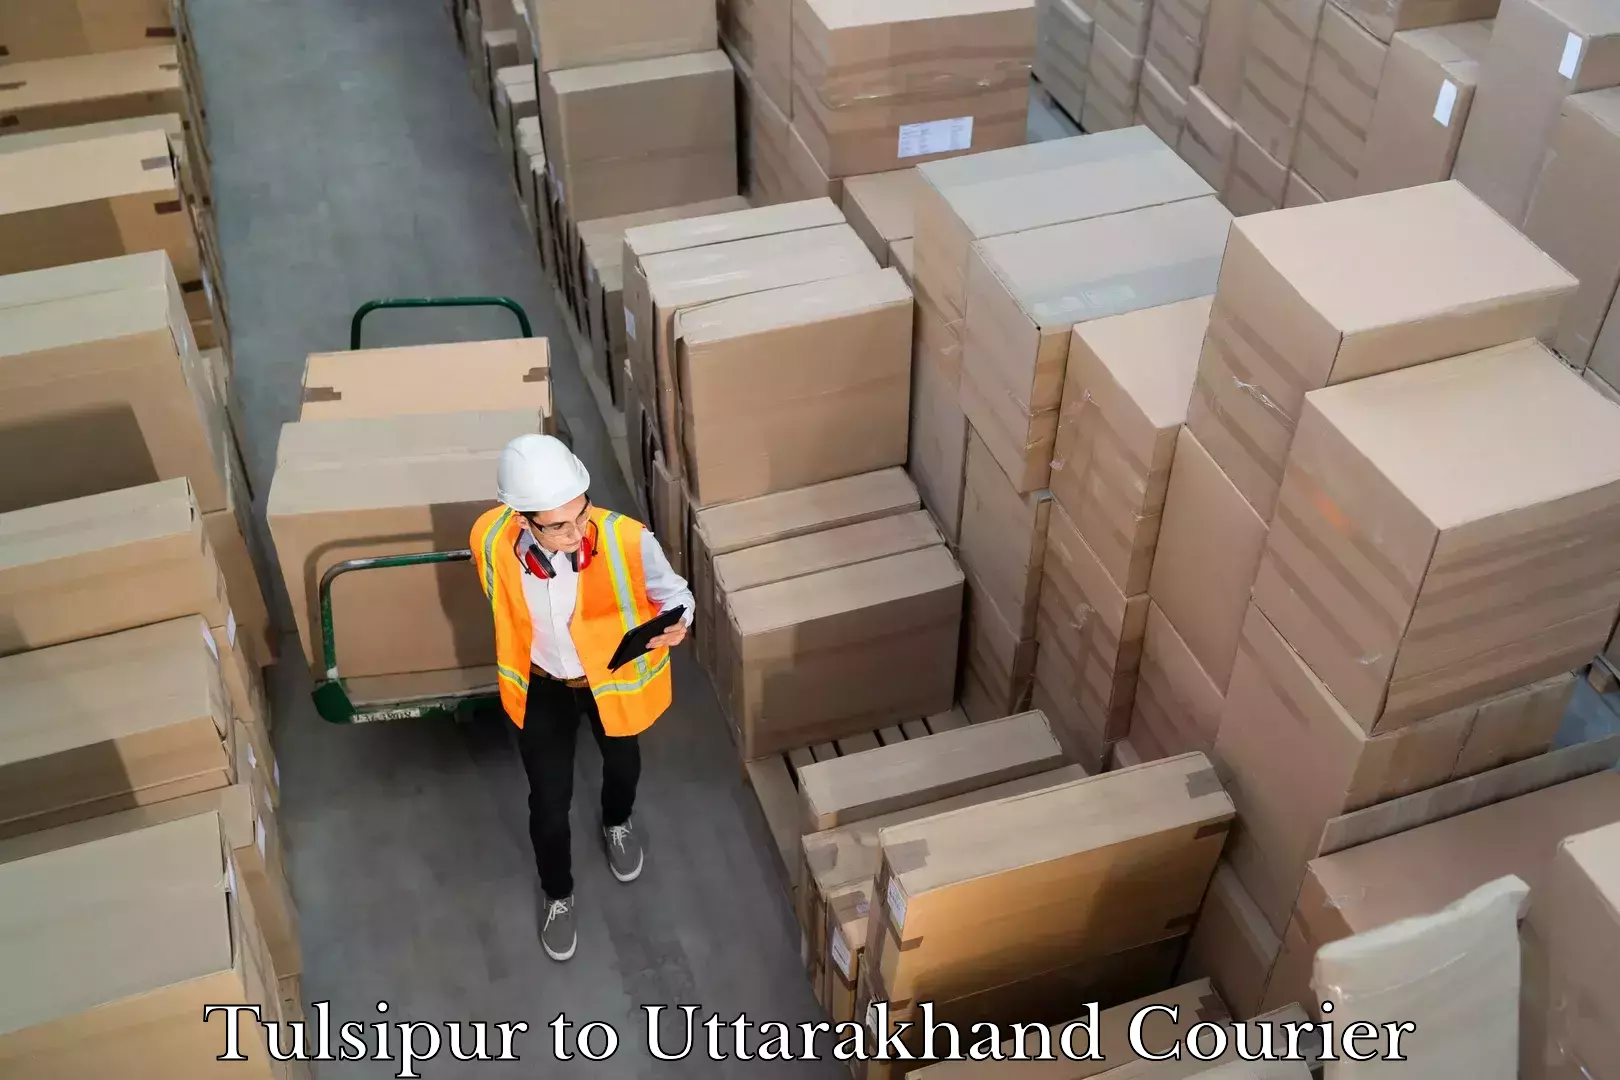 Courier app Tulsipur to Uttarakhand